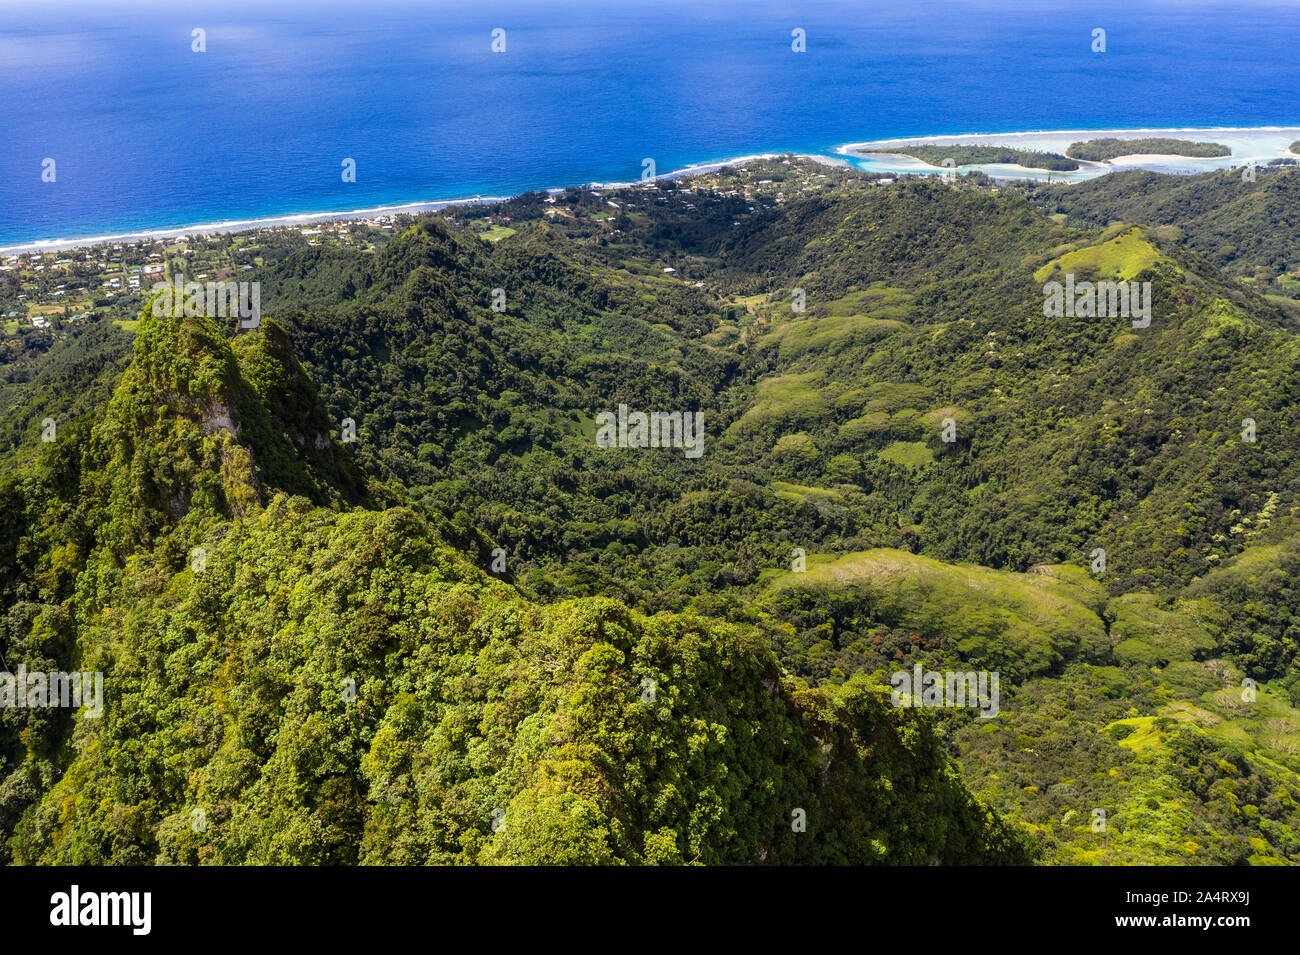 Vue aérienne de la montagne couverte de jungle dans l'intérieur de l'île de Rarotonga dans l'île de cuisiniers dans l'océan Pacifique Banque D'Images